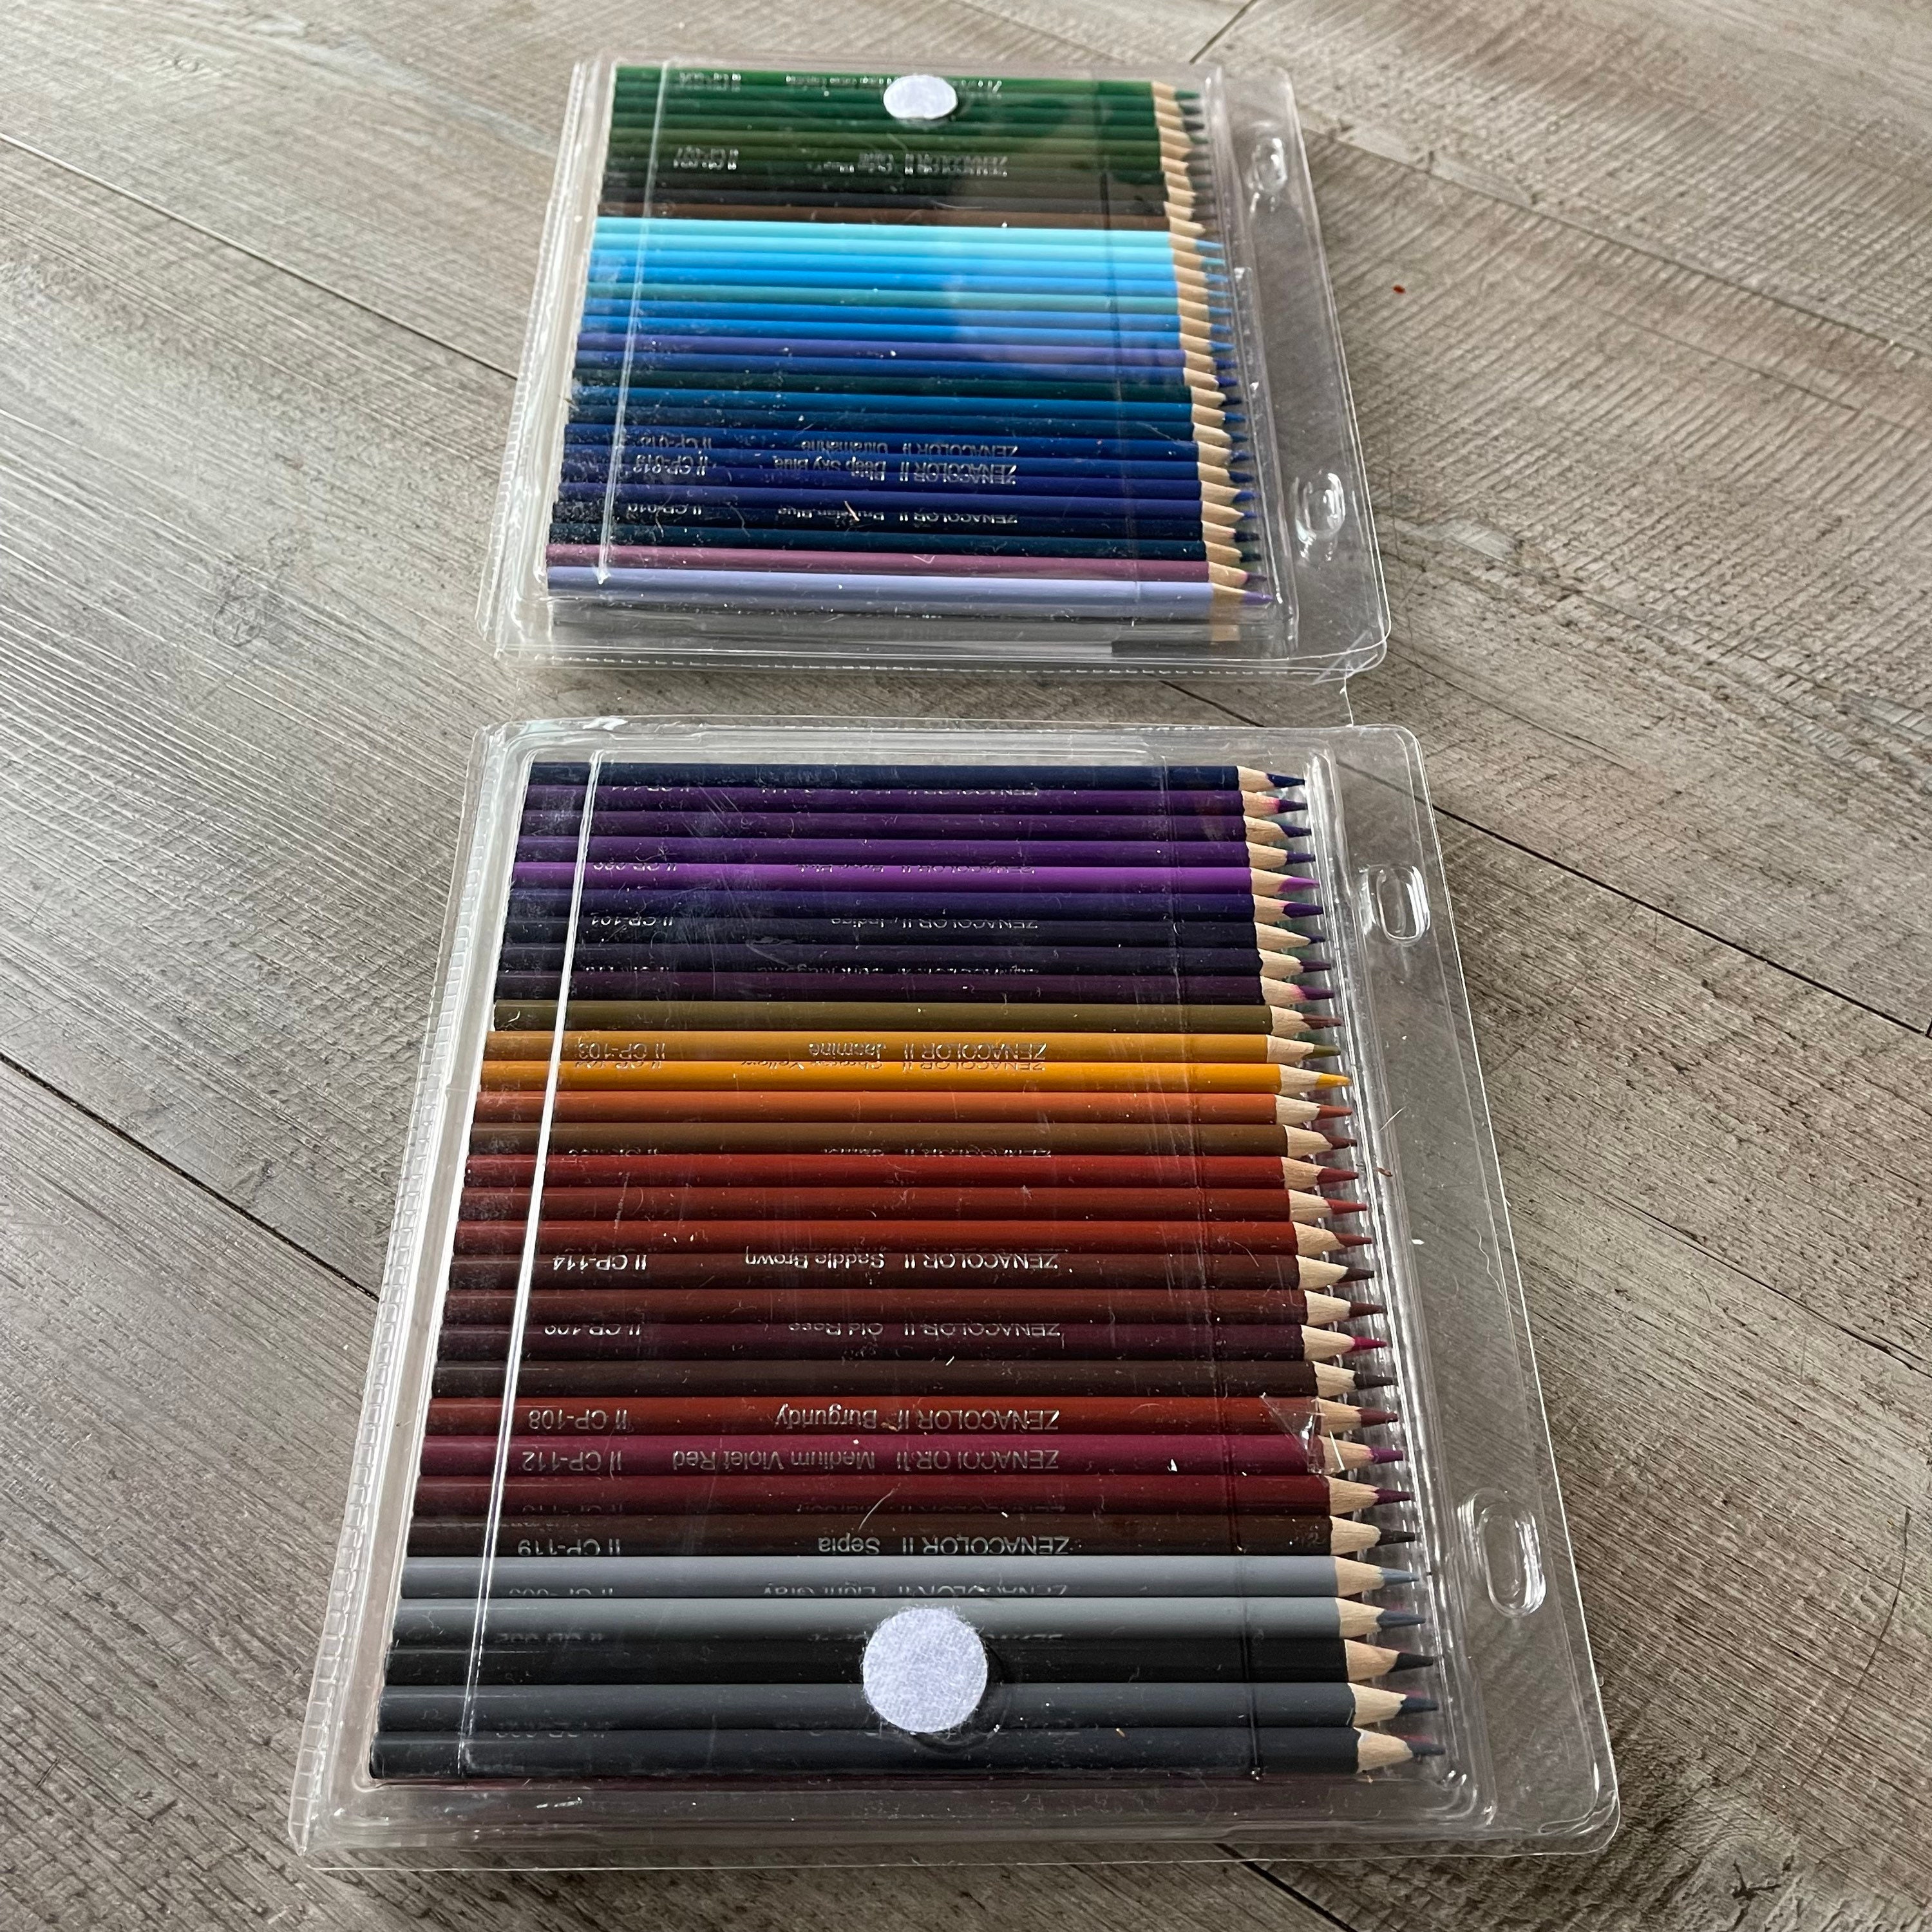 8 Largement Meilleur Crayon De Couleur Pour Coloriage Adulte Collection   Coloriage, Pages de coloration imprimables gratuites, Crayon de couleur